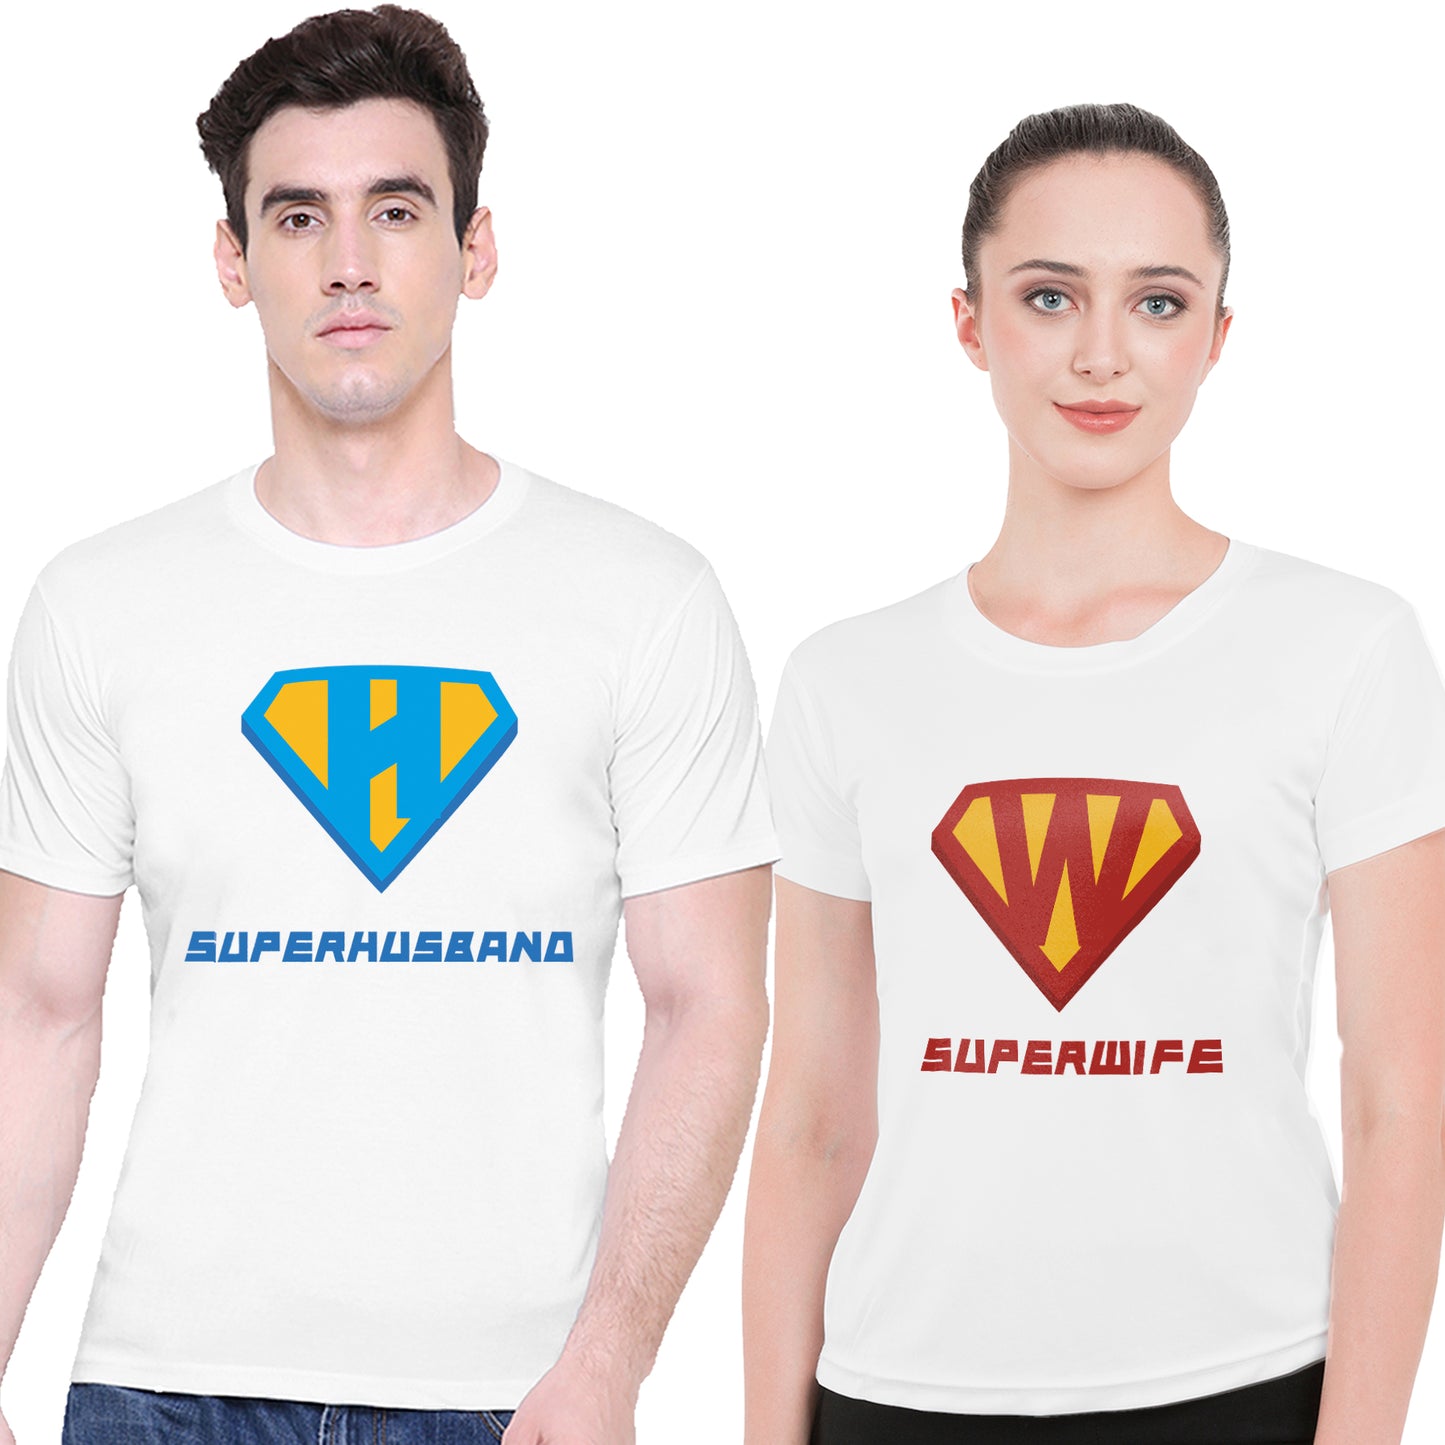 Super Husband & Wife matching Couple T shirts- White